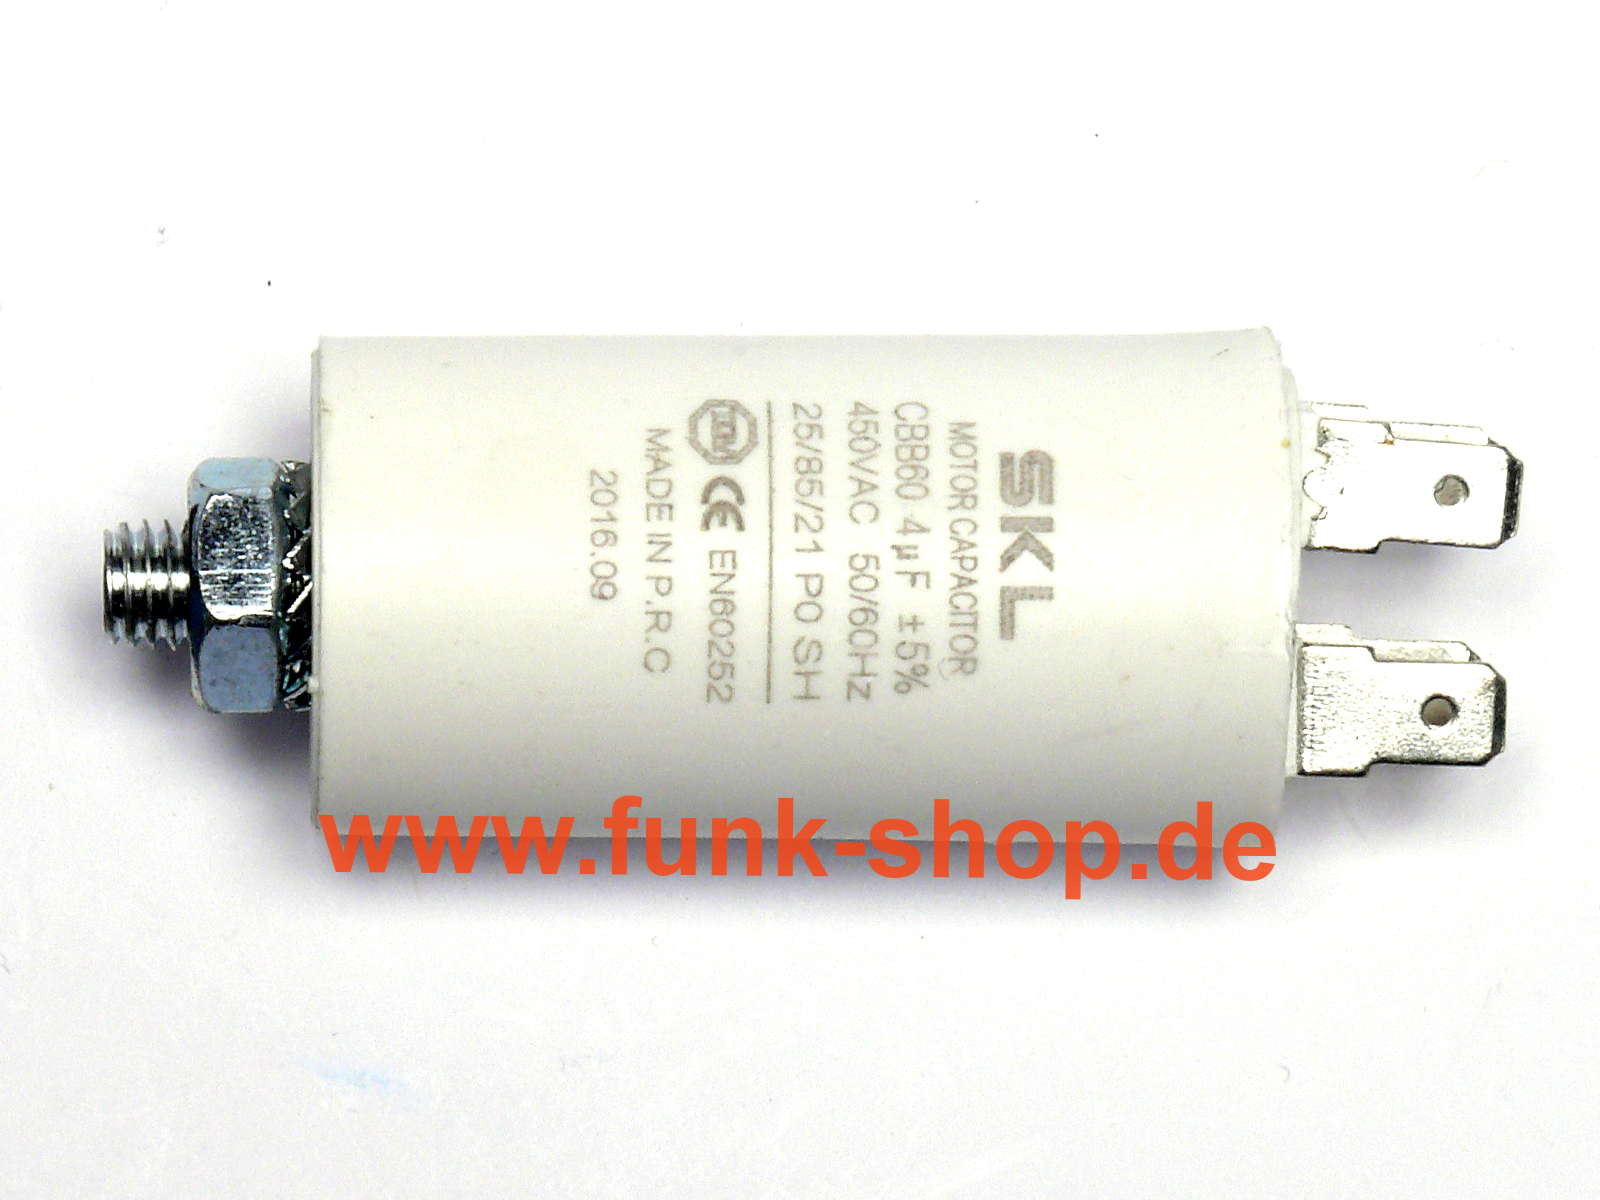 Motorkondensator mit 4,0uF als Anlasskondensator (Anlaufkondesator), Betriebskondensator oder Phasenschiebekondesator (Phasenschieber)